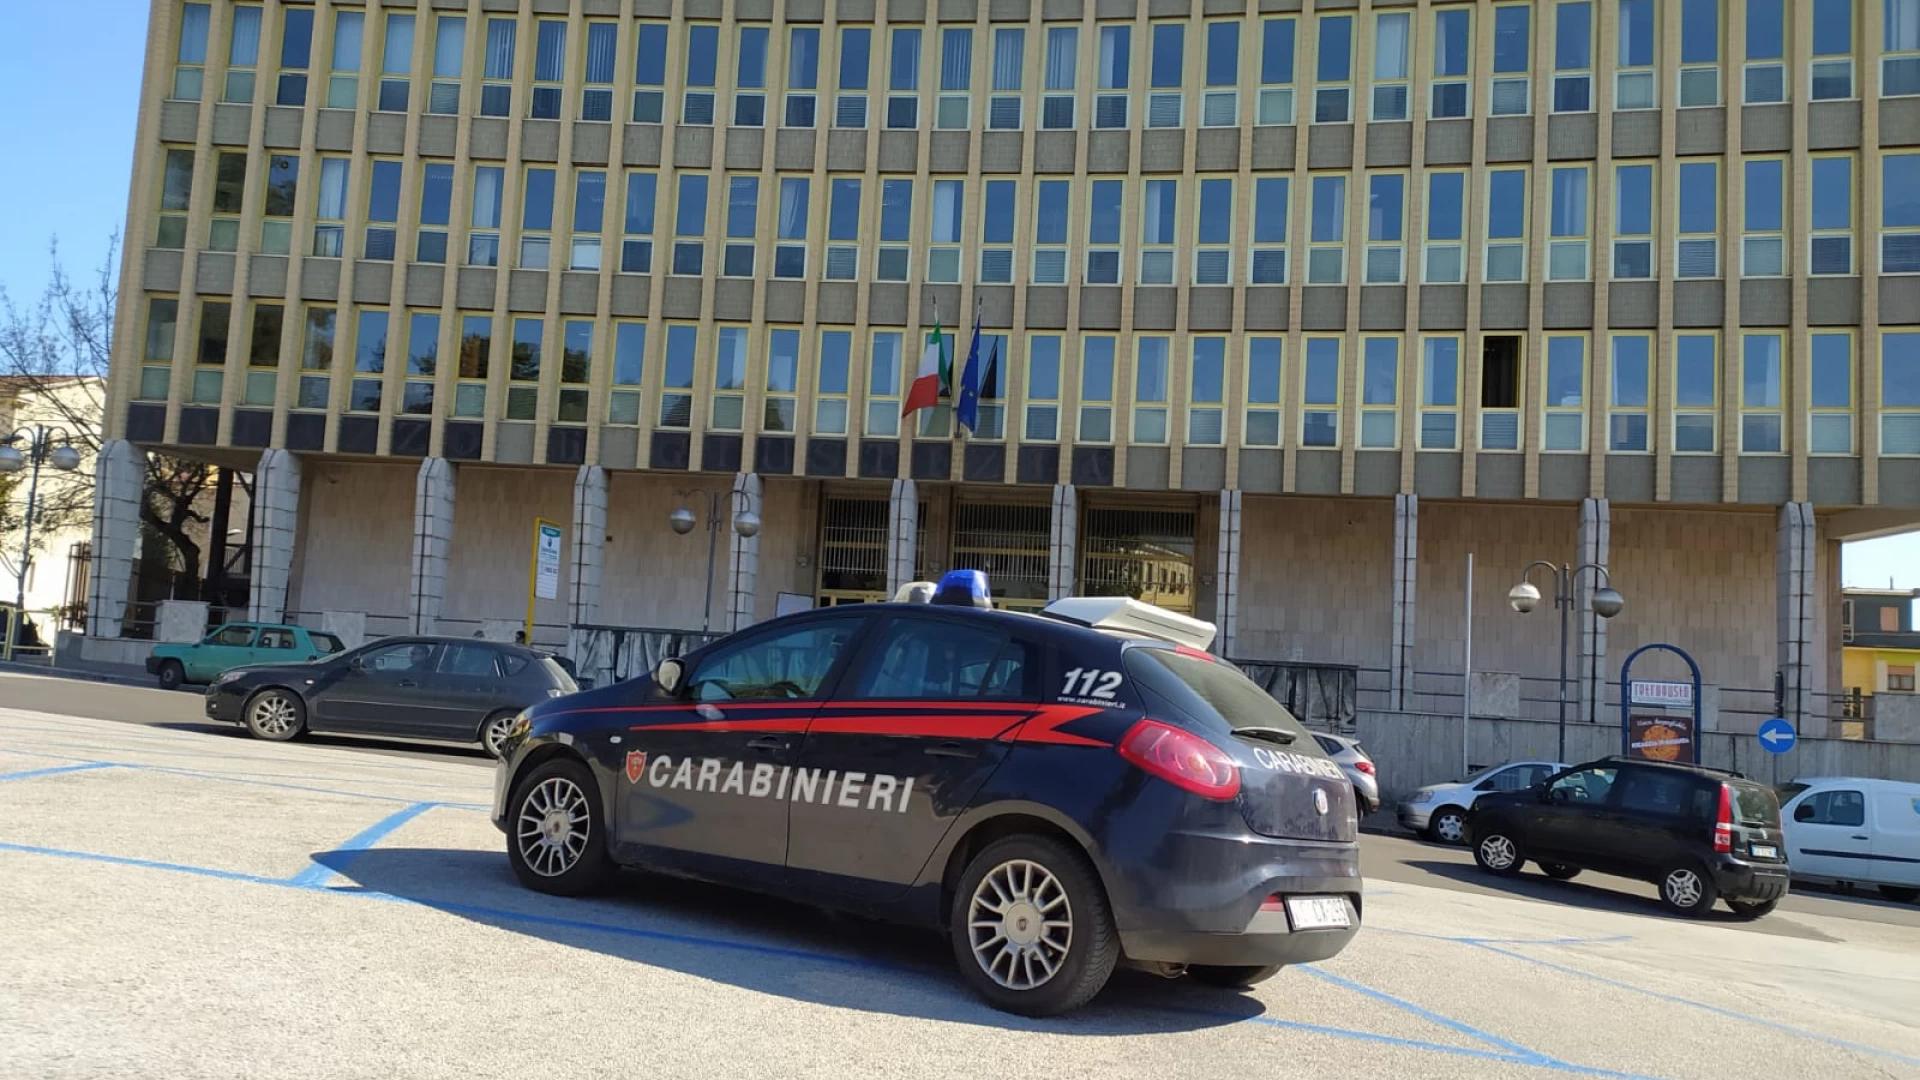 Isernia: Agli arresti domiciliari continua a spacciare, i Carabinieri lo arrestano e lo portano in carcere.